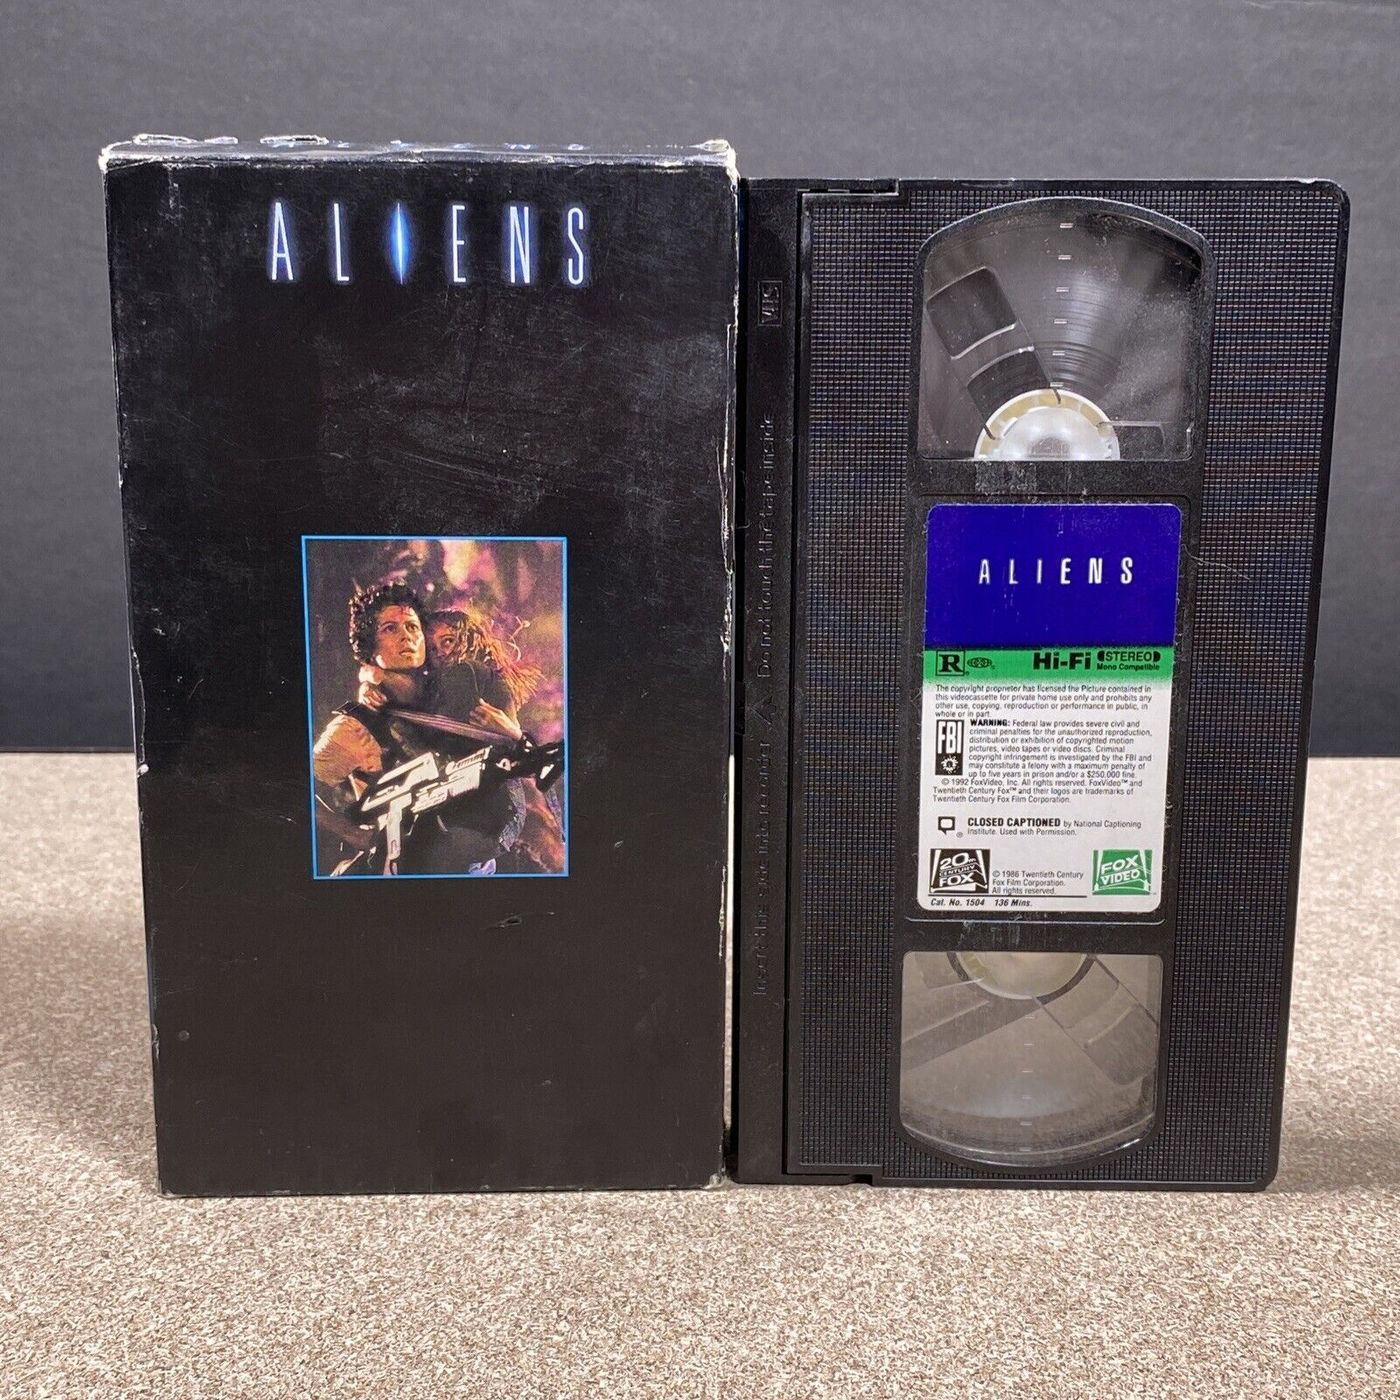 1986 - Aliens Image